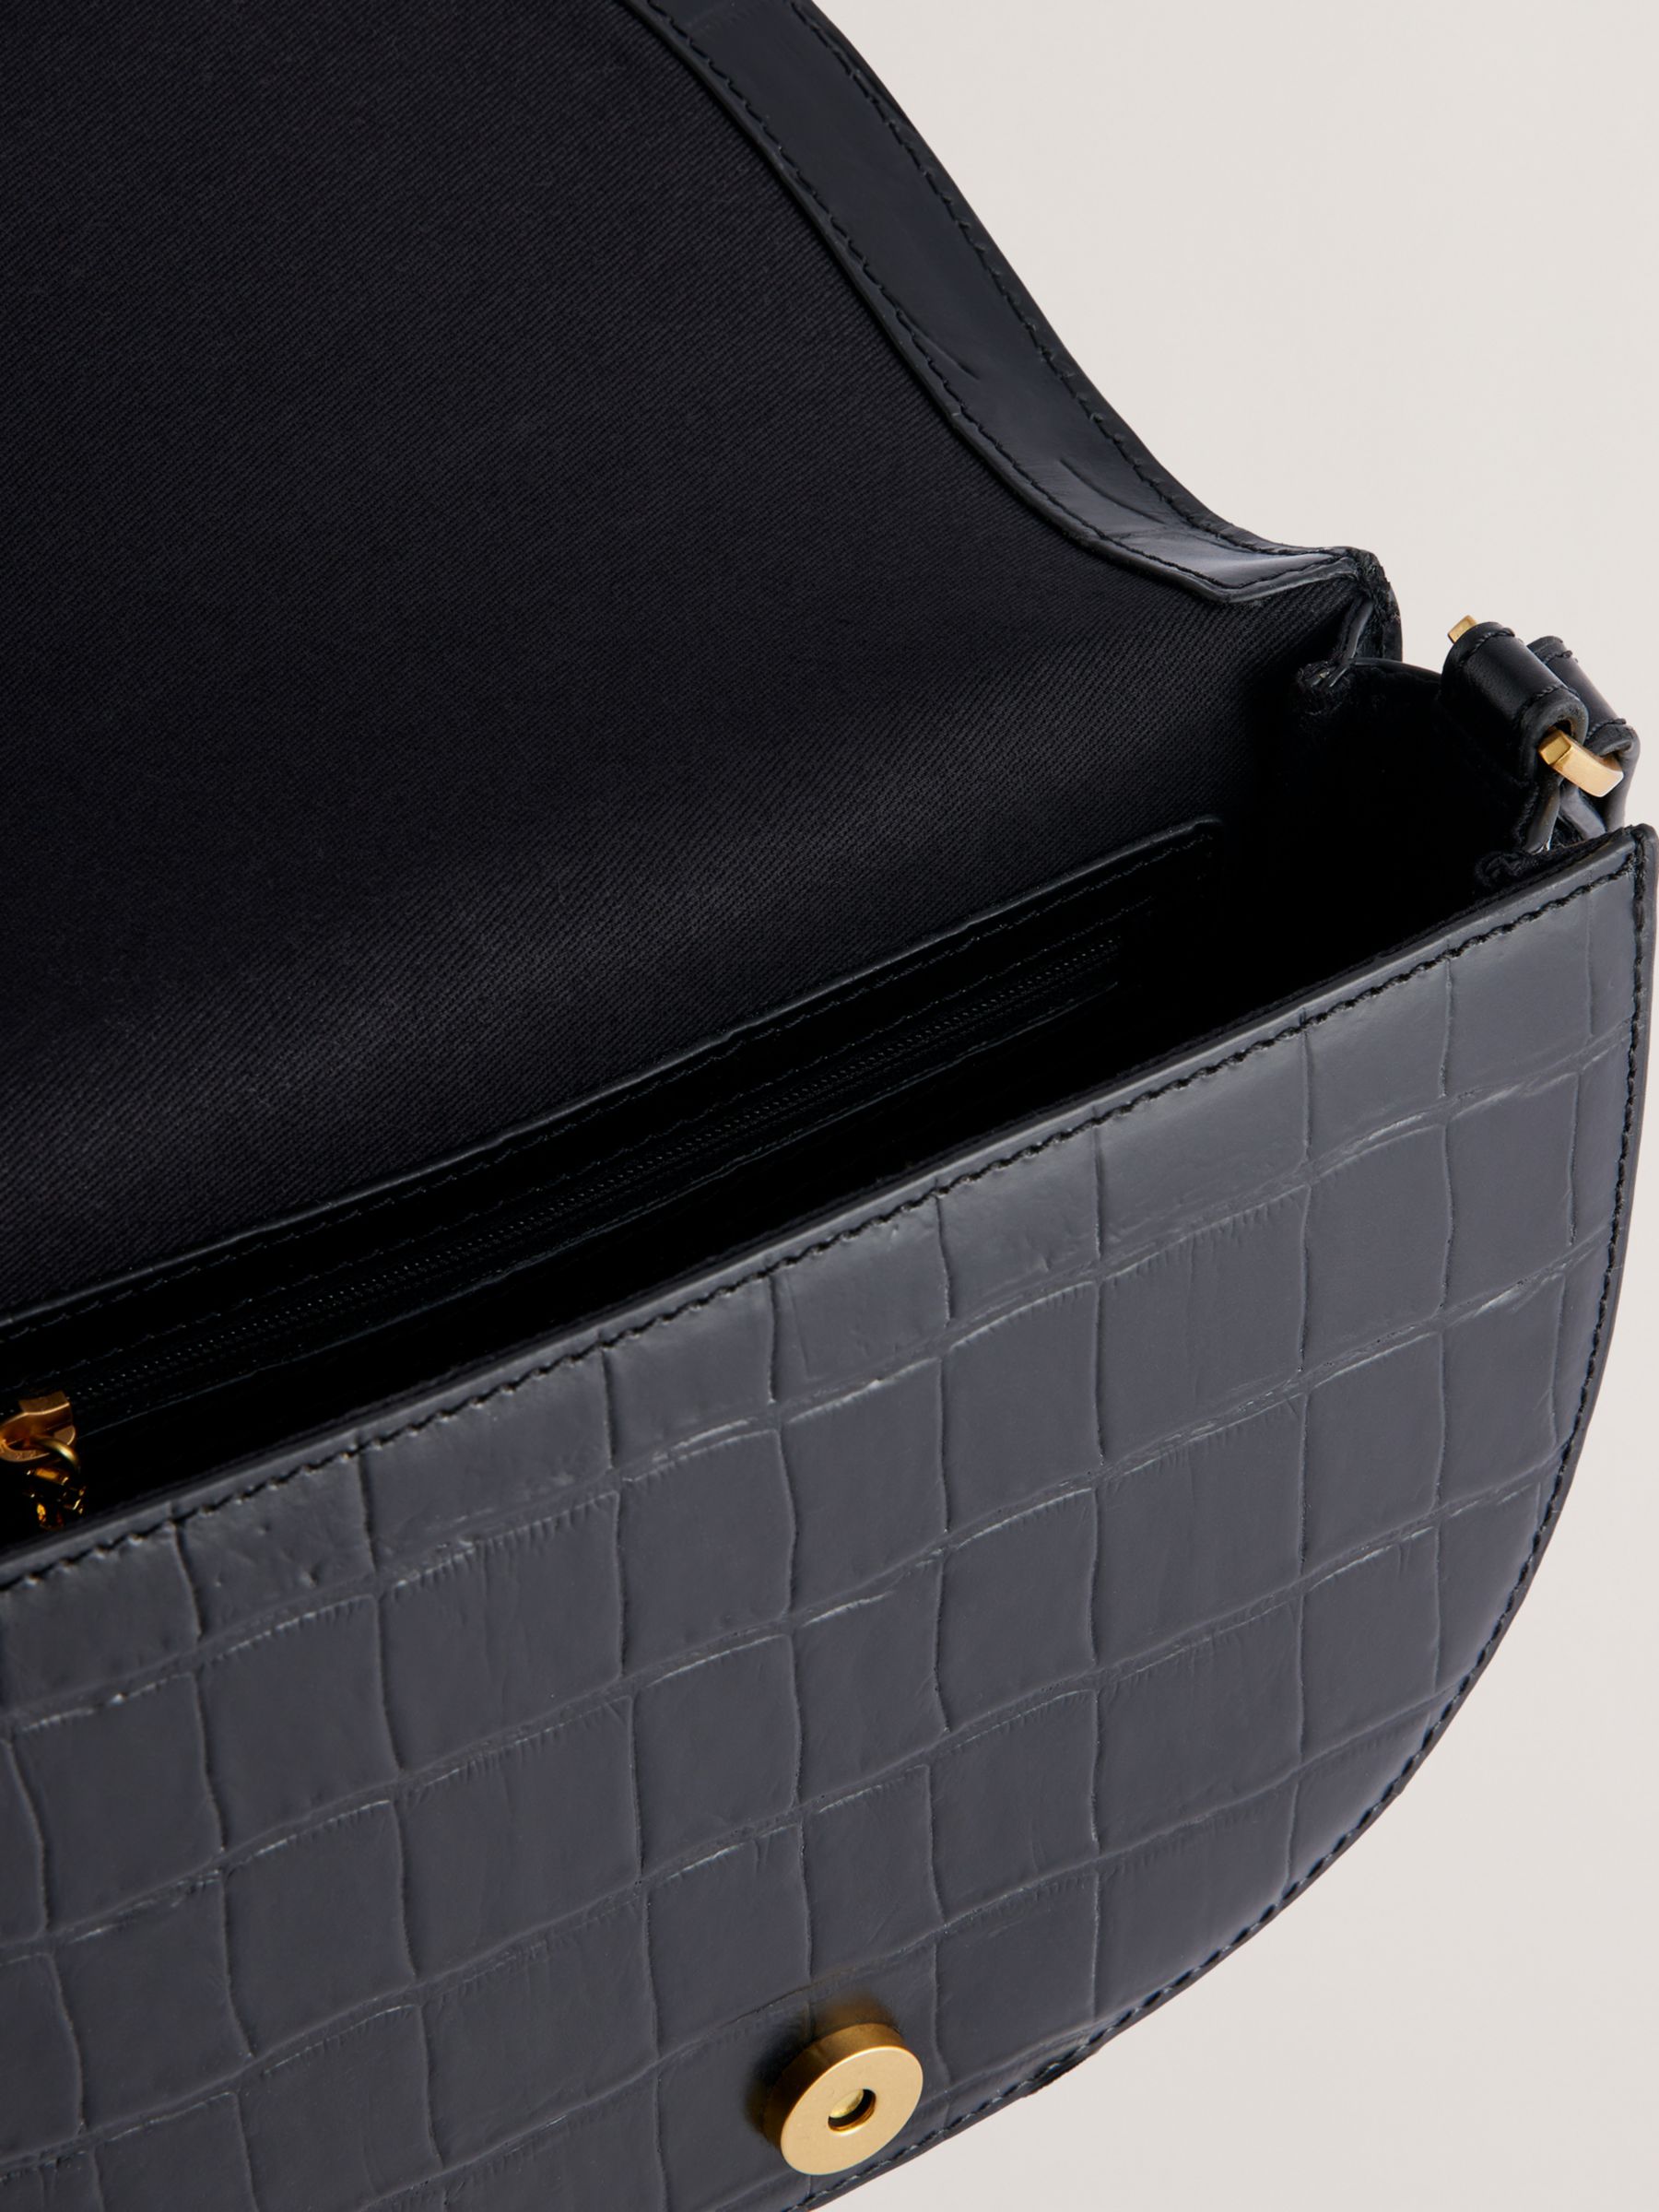 Ted Baker Sohho Croc Effect Leather Saddle Bag, Black, One Size